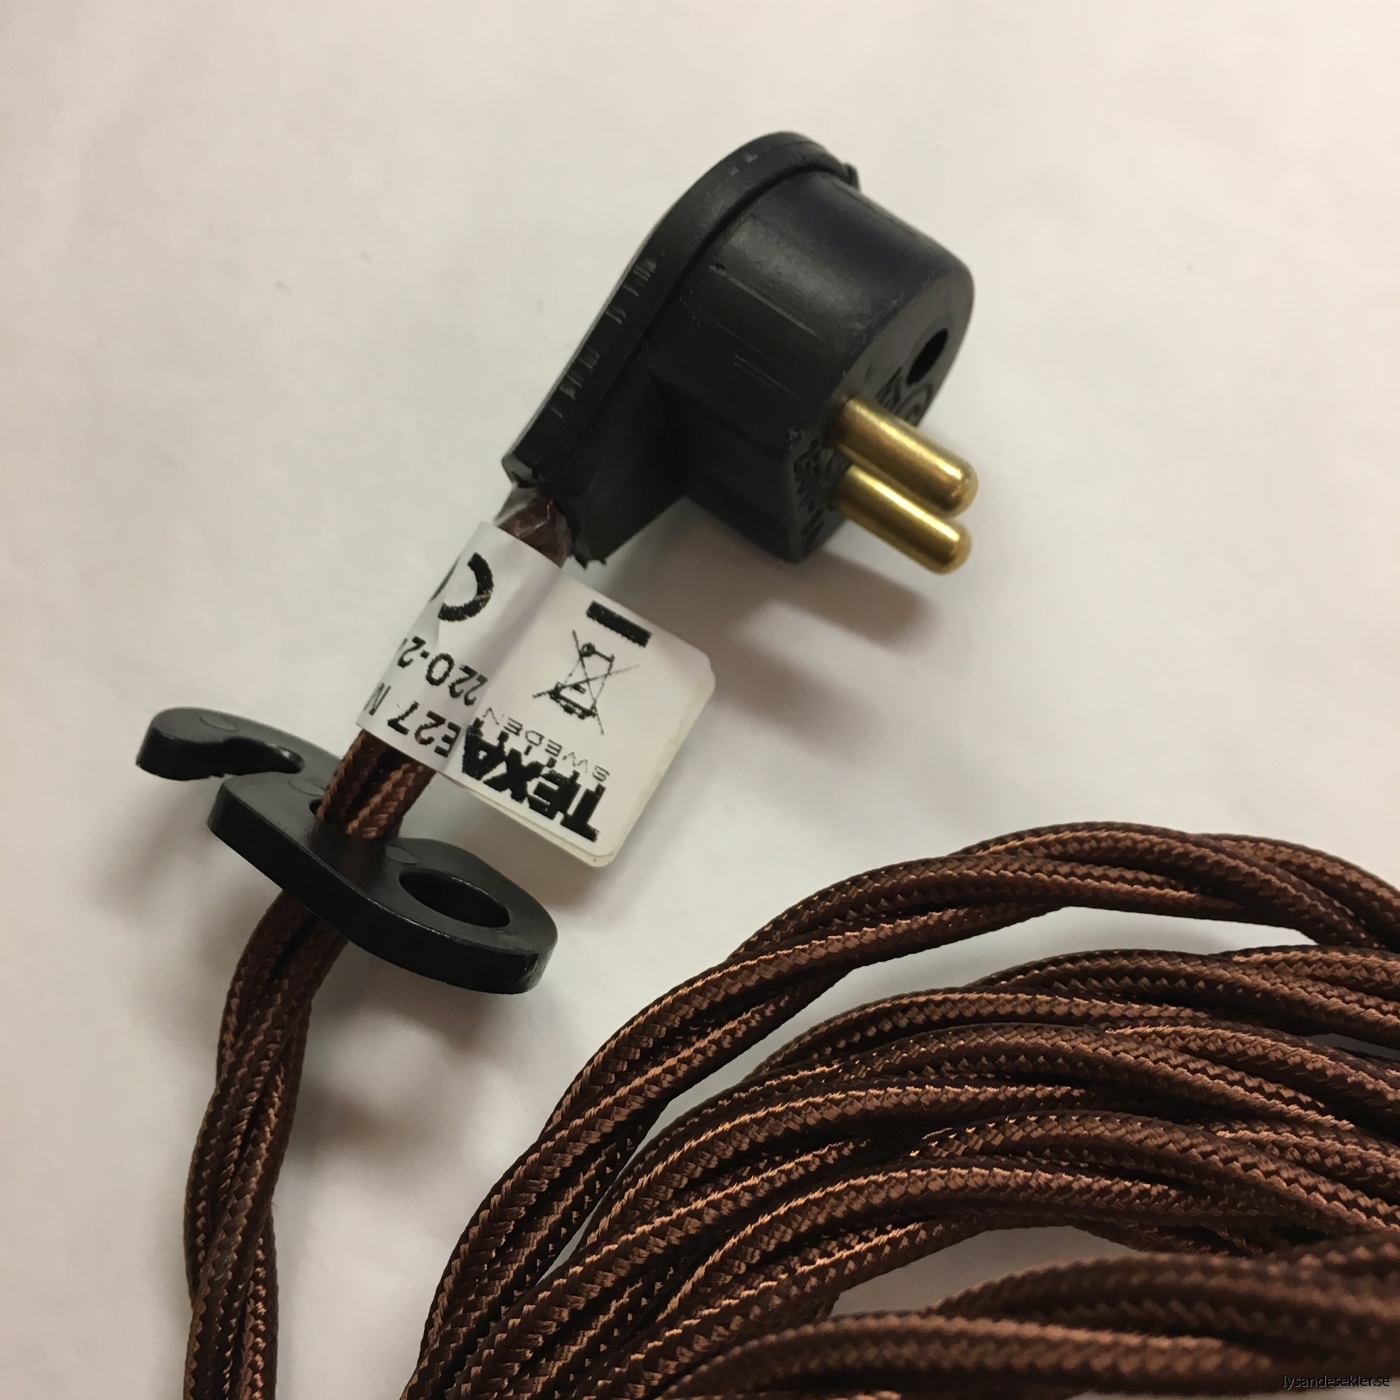 tygsladd textilssladd lampupphäng med 2 ringar utan skruvar för skärm eller glödlampa (35)